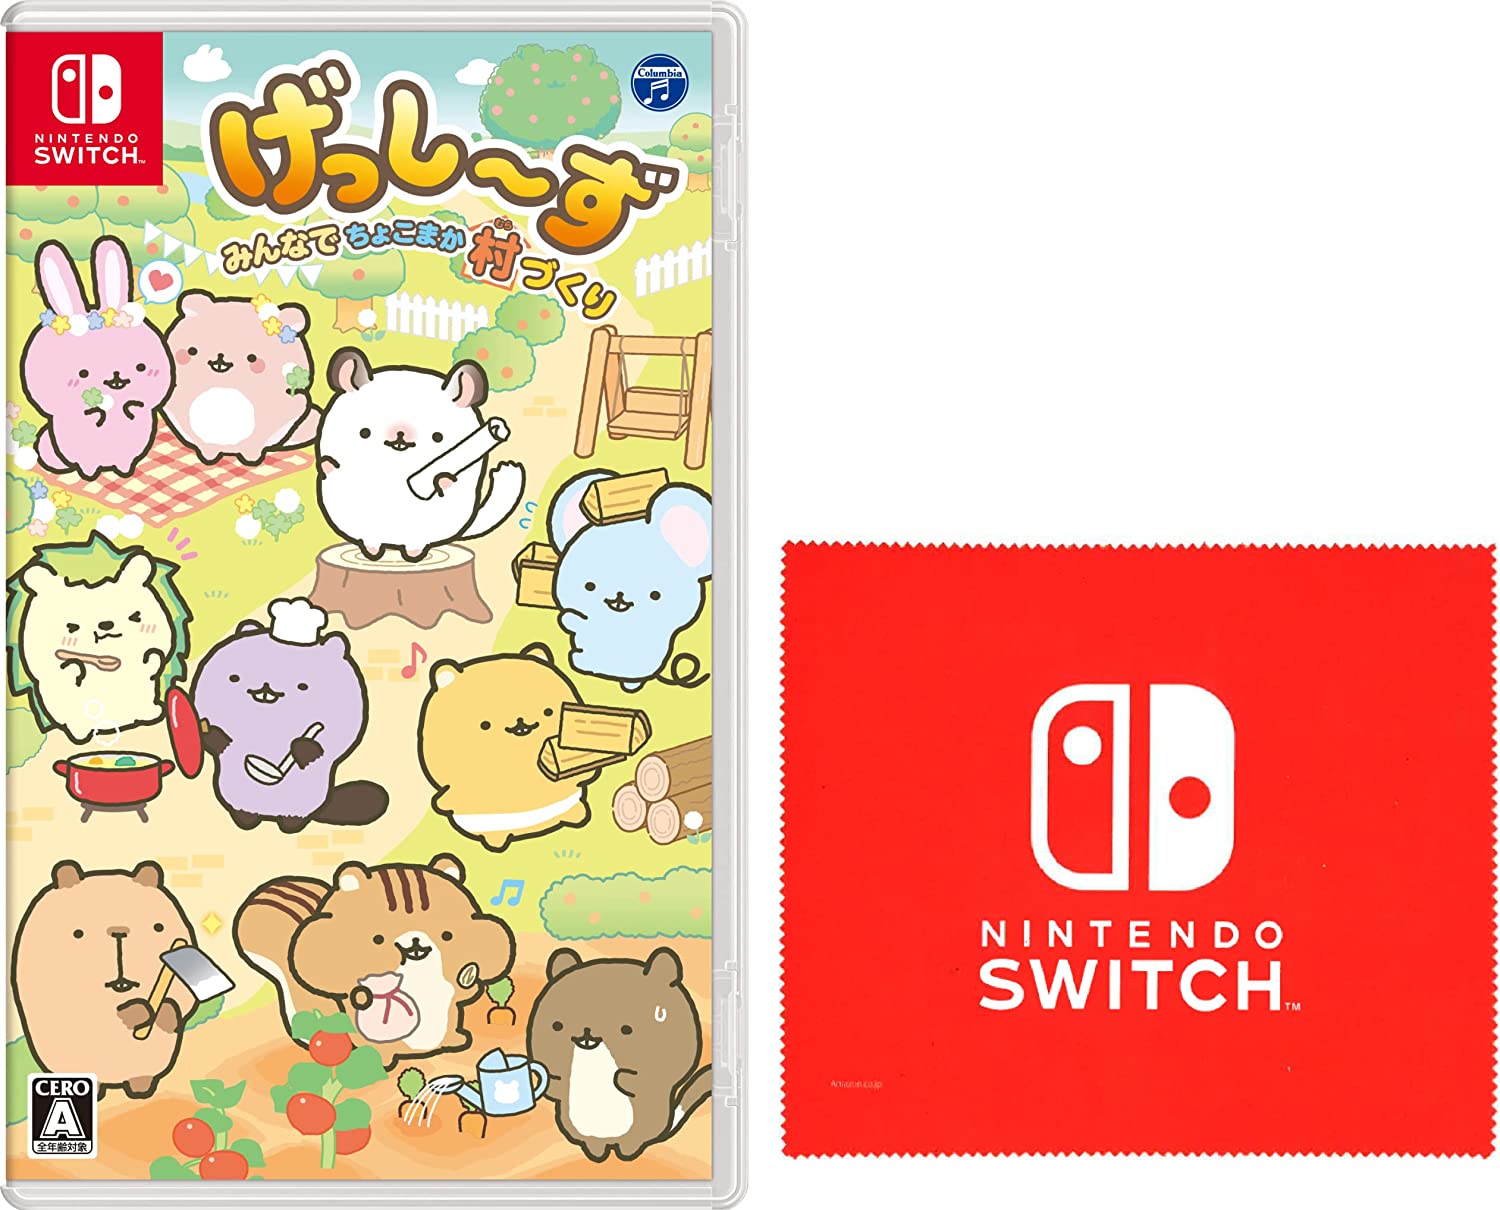 げっしず　みんなでちょこまか村づくり -Switch (ABO Nintendo Switch ロゴデザイン マイクロファイバークロス 同梱)